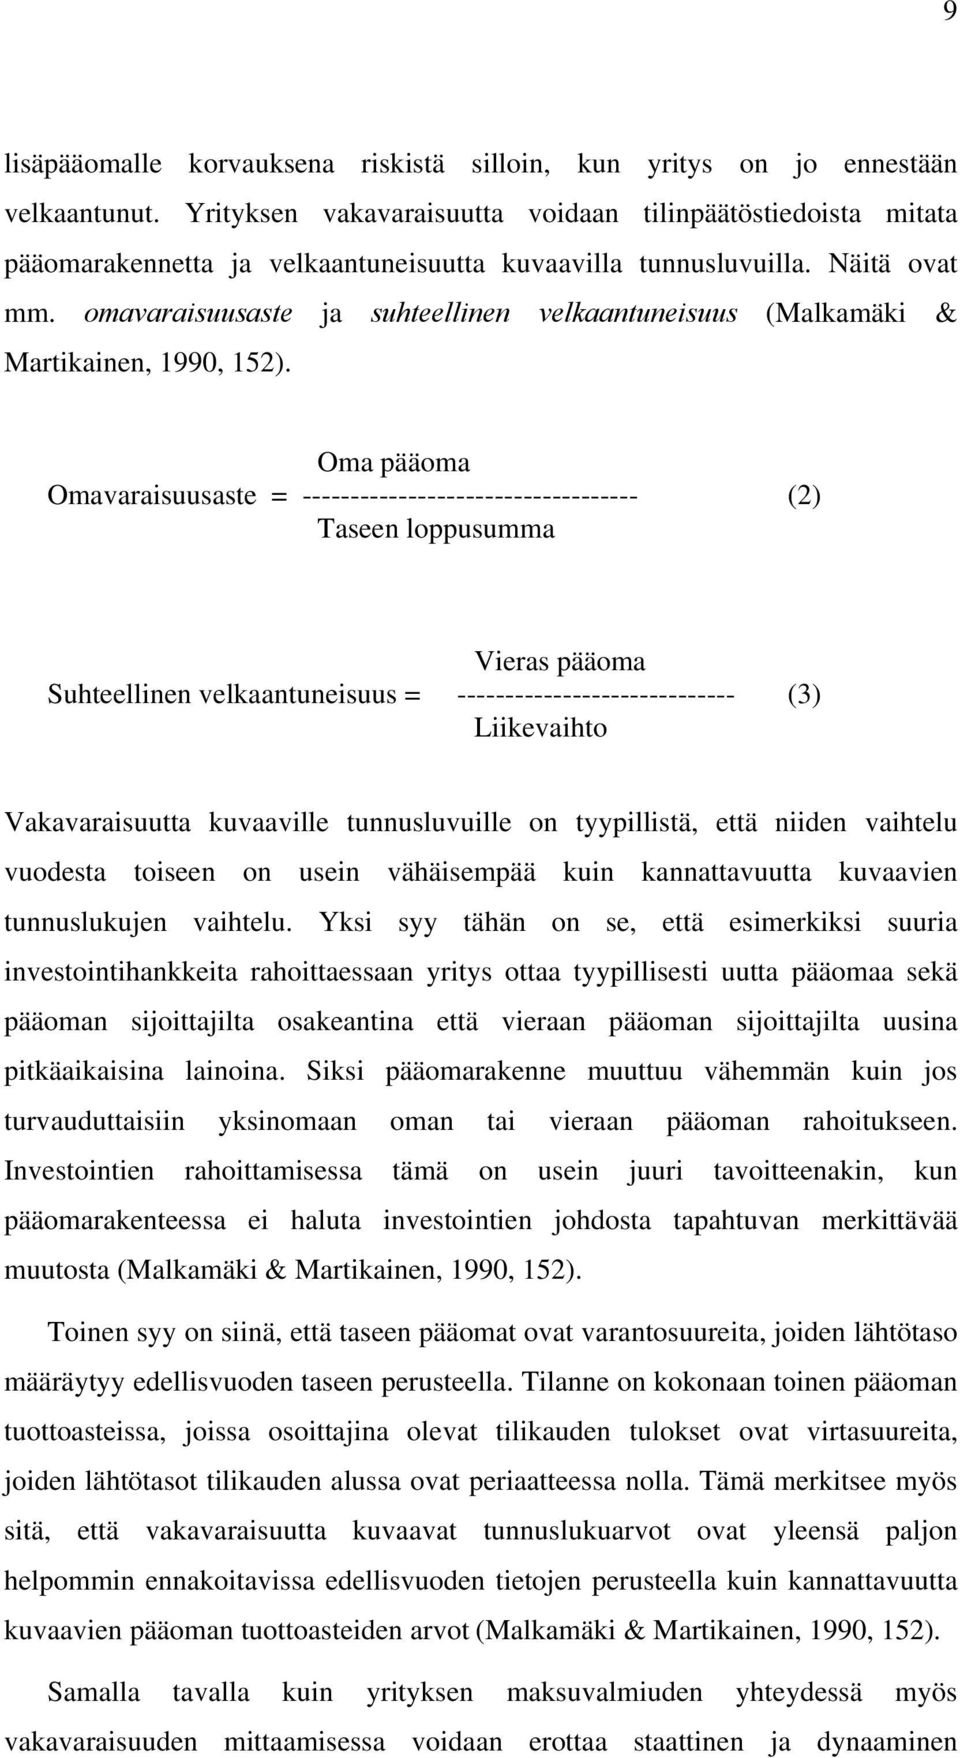 omavaraisuusaste ja suhteellinen velkaantuneisuus (Malkamäki & Martikainen, 1990, 152).